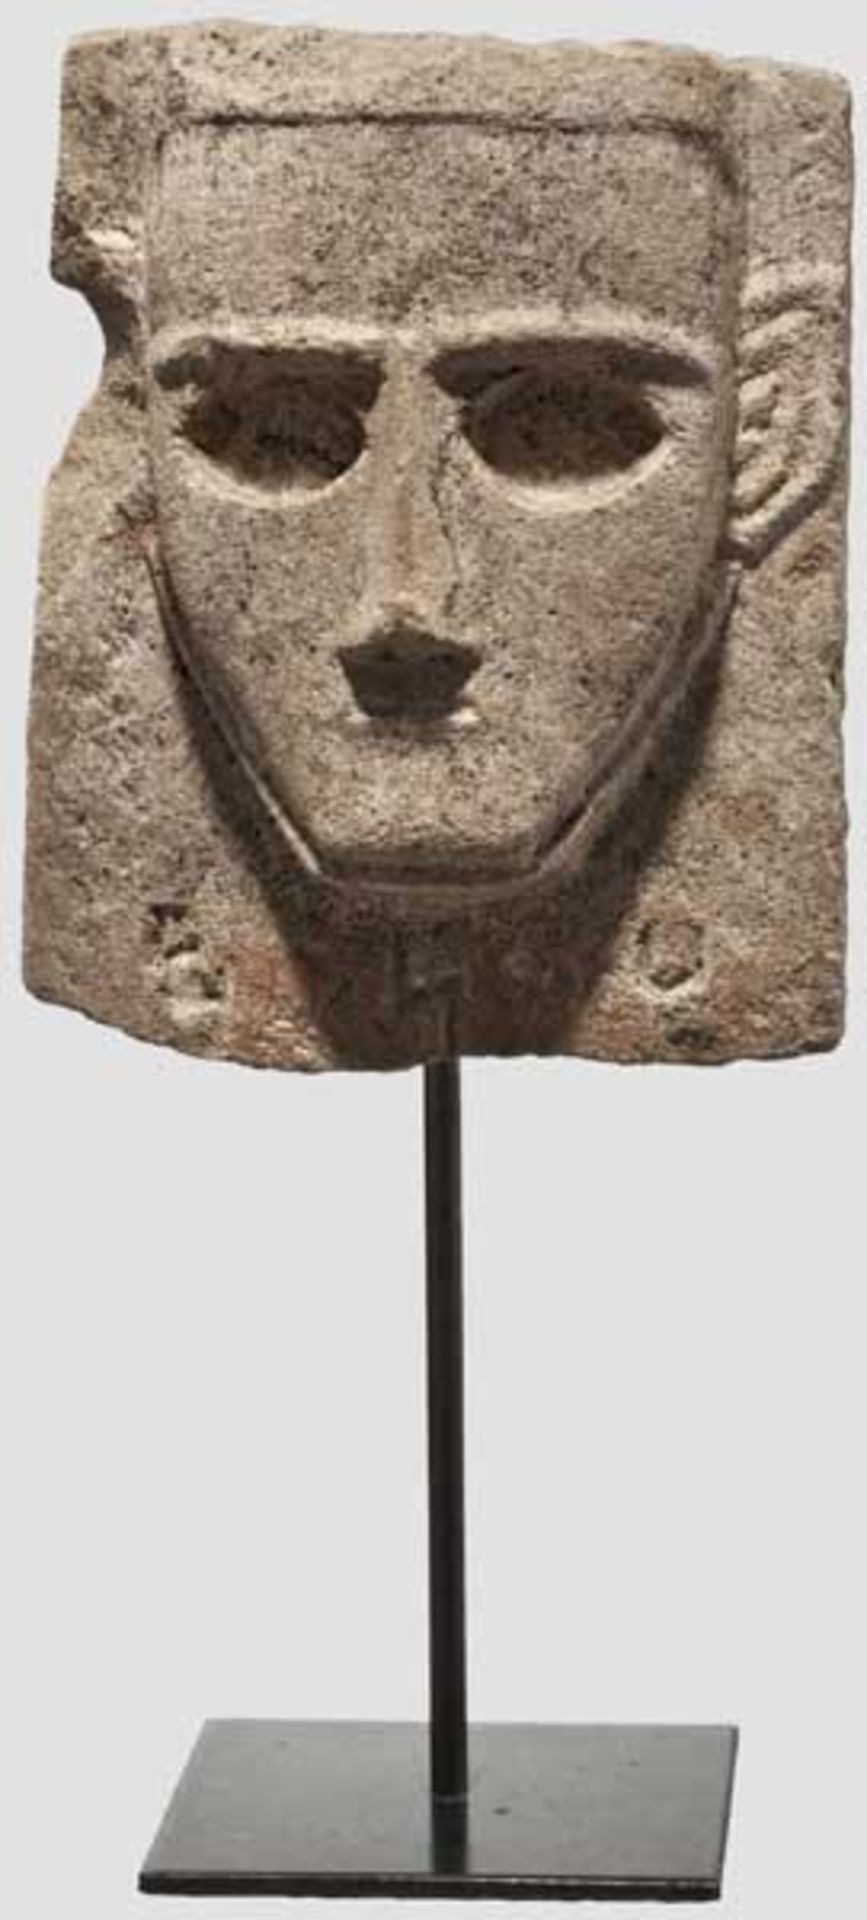 Kopfstele aus Kalkstein, sabäisch, 3. - 1. Jhdt. v. Chr.   Oberer Teil einer Stele mit Darstellung